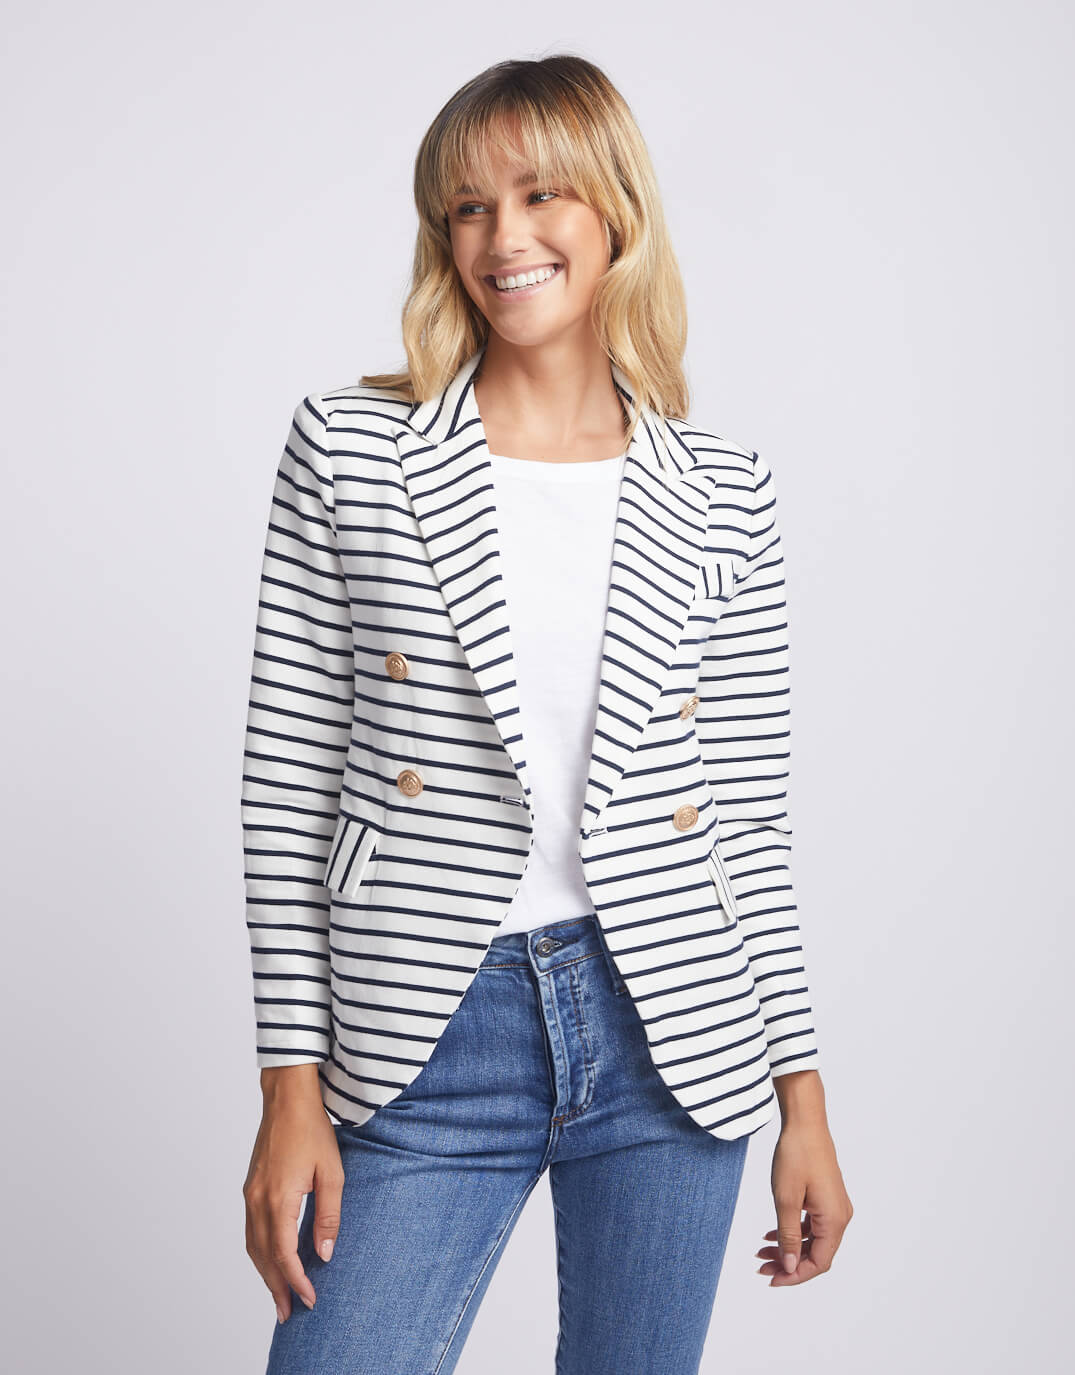 gordon-smith-laura-stripe-blazer-navy-womens-clothing